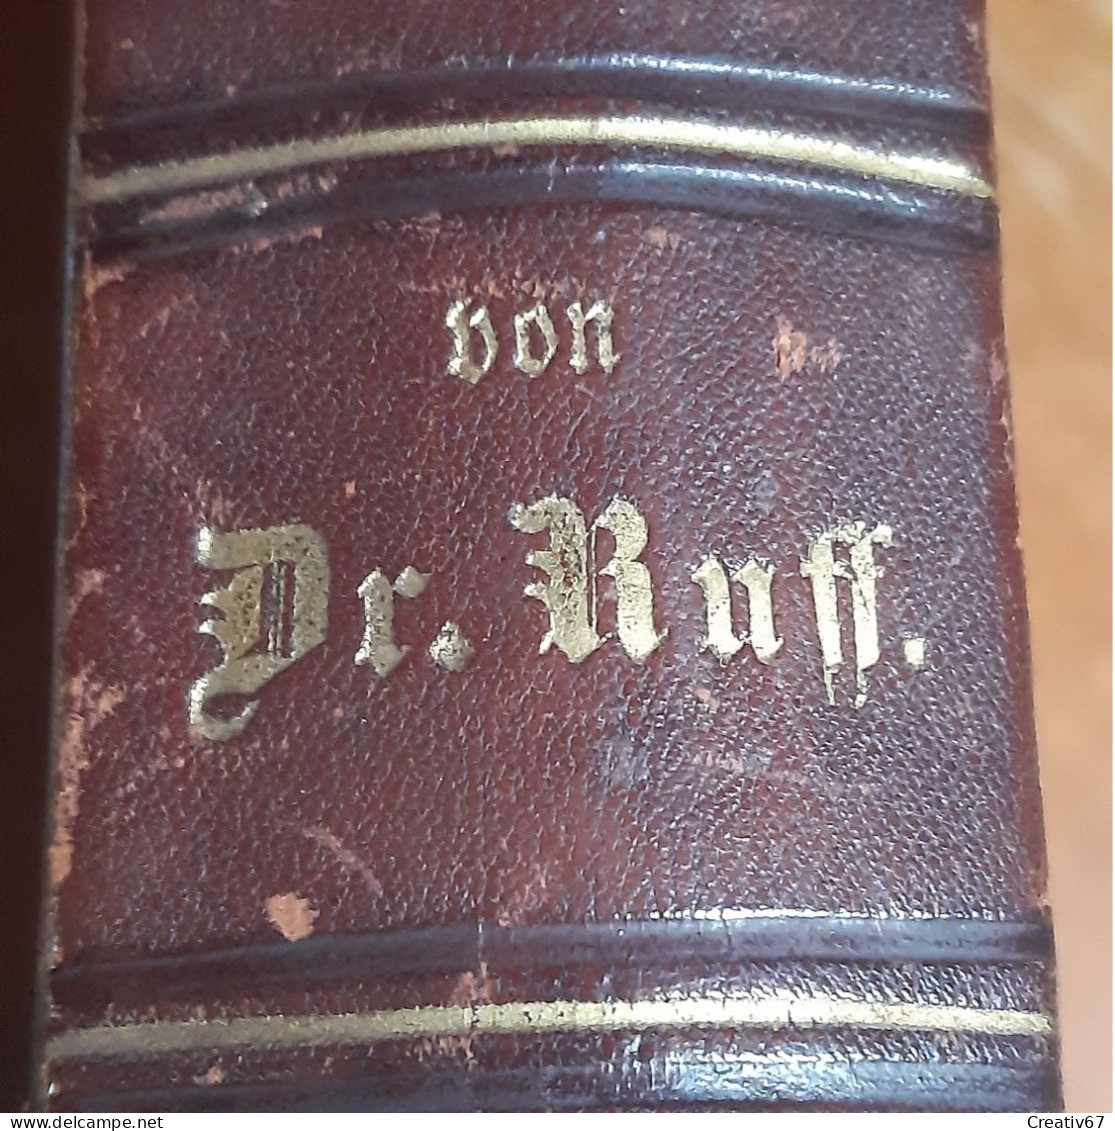 Gesundheit Lexikon Von Dr. Ruff 1882 Illustré Relié Cuir Très Bon état Selon Photos (cs) - Dizionari